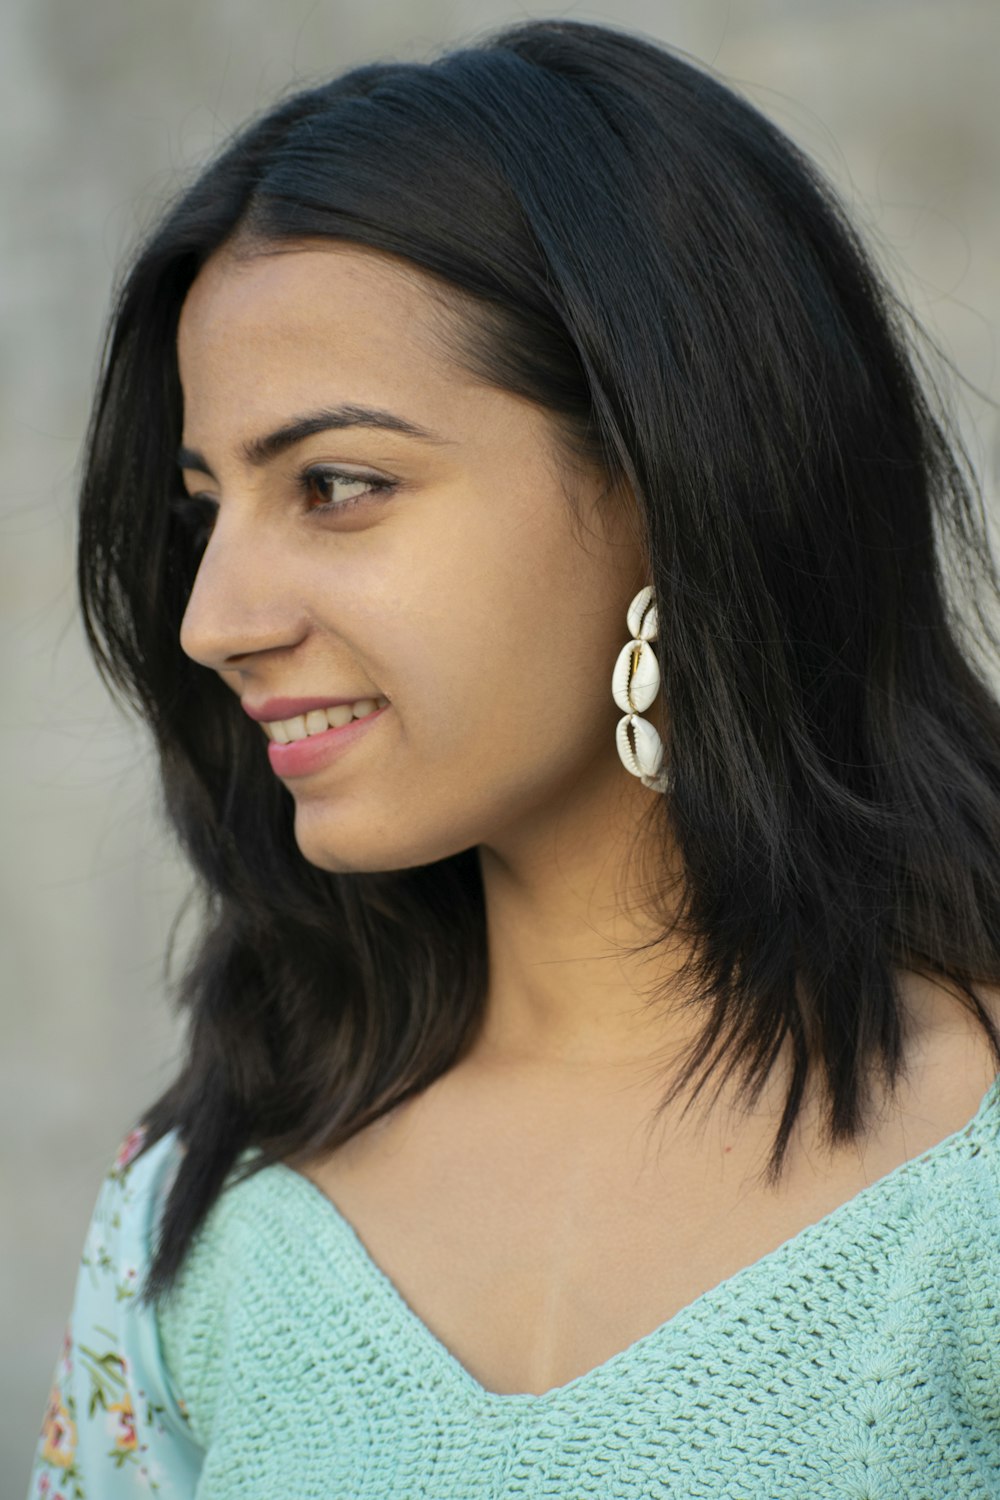 woman in teal shirt wearing silver earrings